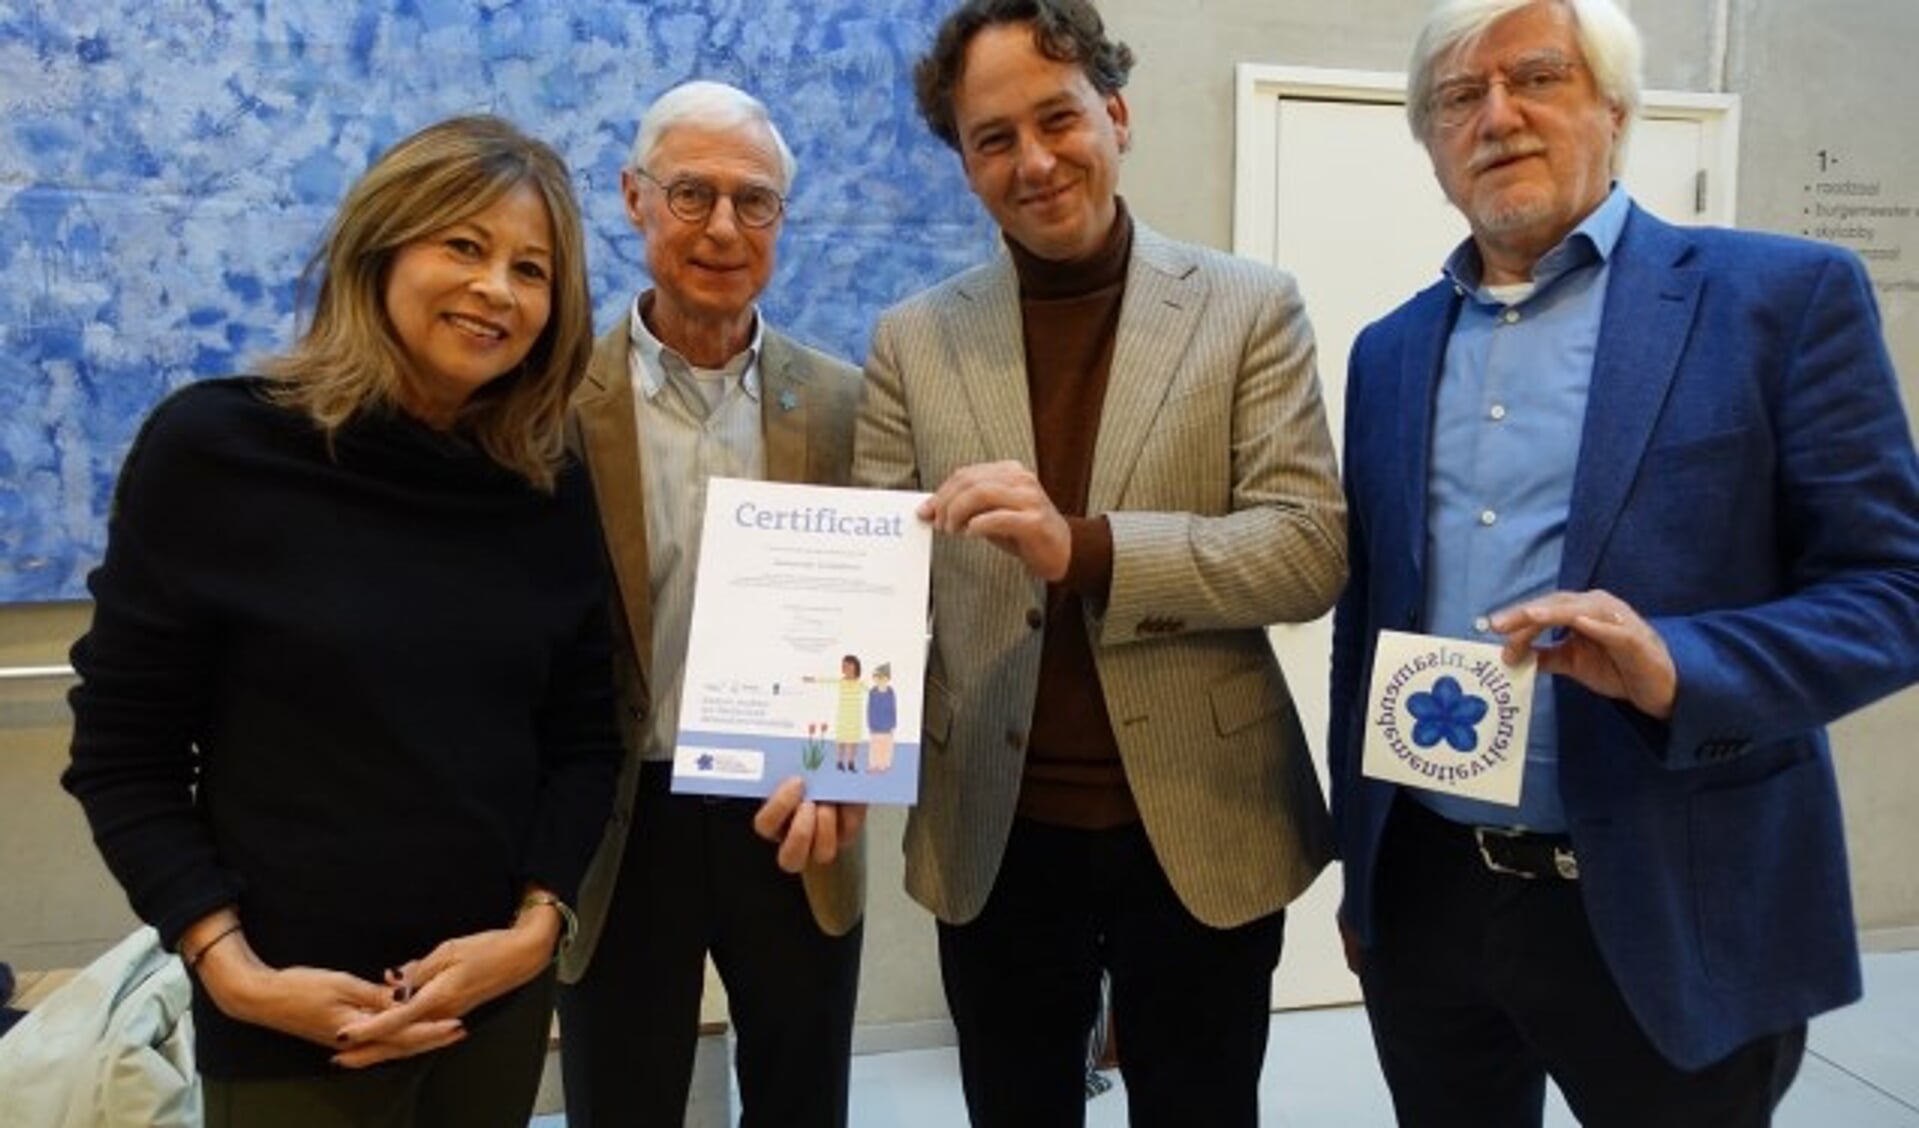 Vorige week dinsdag ontving wethouder Bernd Roks het certificaat dementievriendelijke gemeente van Samen dementievriendelijk. ''We zijn er trots op!'' (Ingezonden foto)